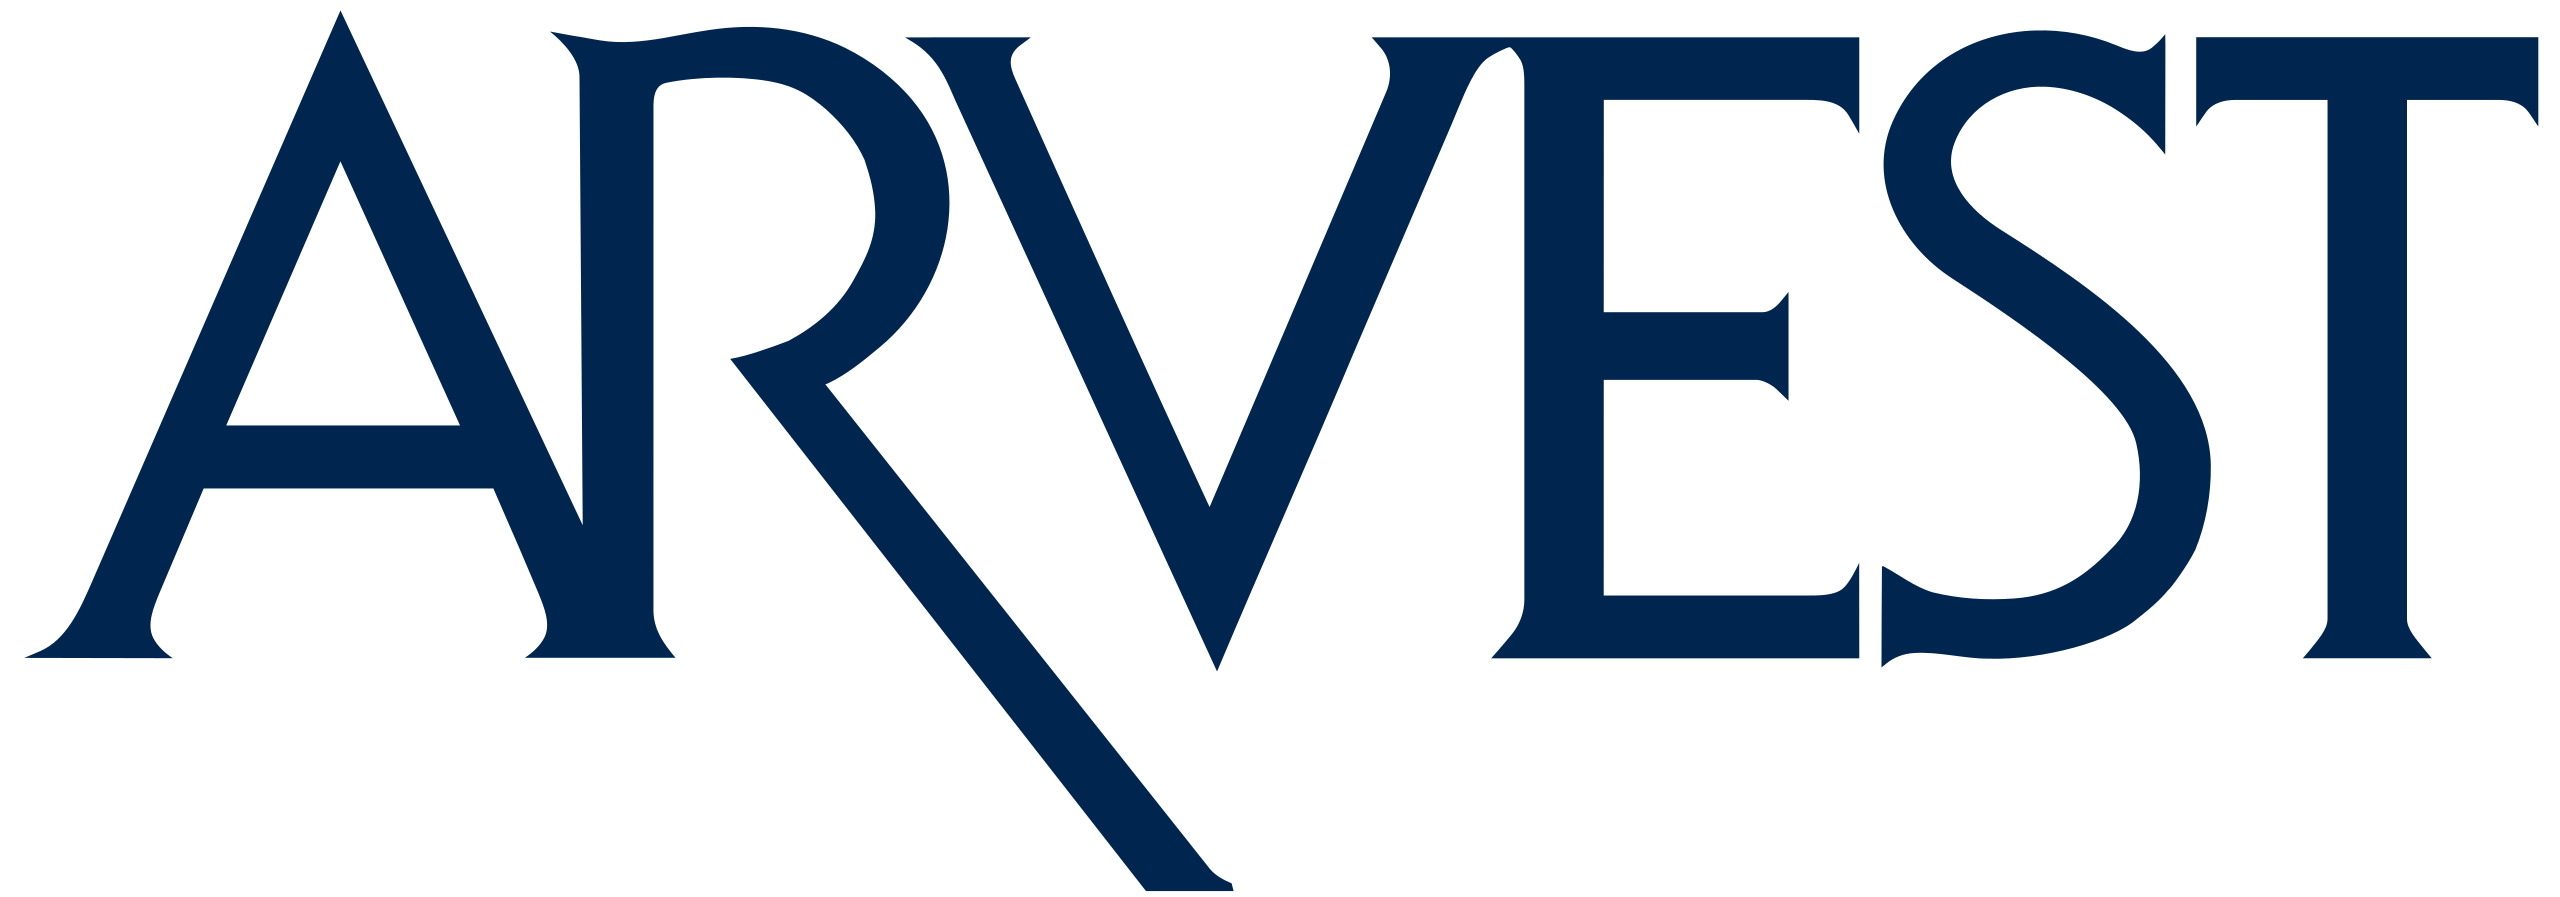 Arvest Bank logo.svg